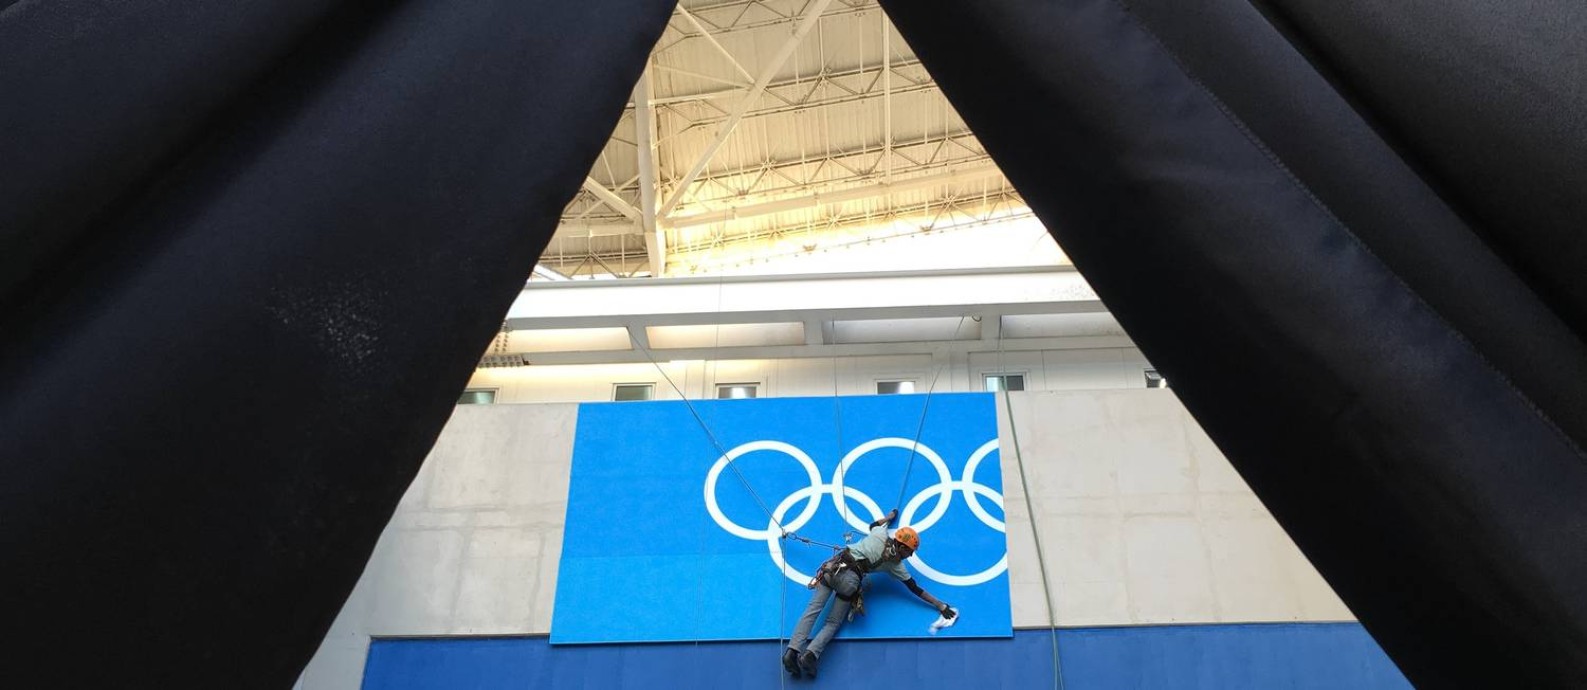 Funcionário trabalha na instalação de placa no Estádio Olímpico (Engenhão) Foto: LUCY NICHOLSON / Reuters